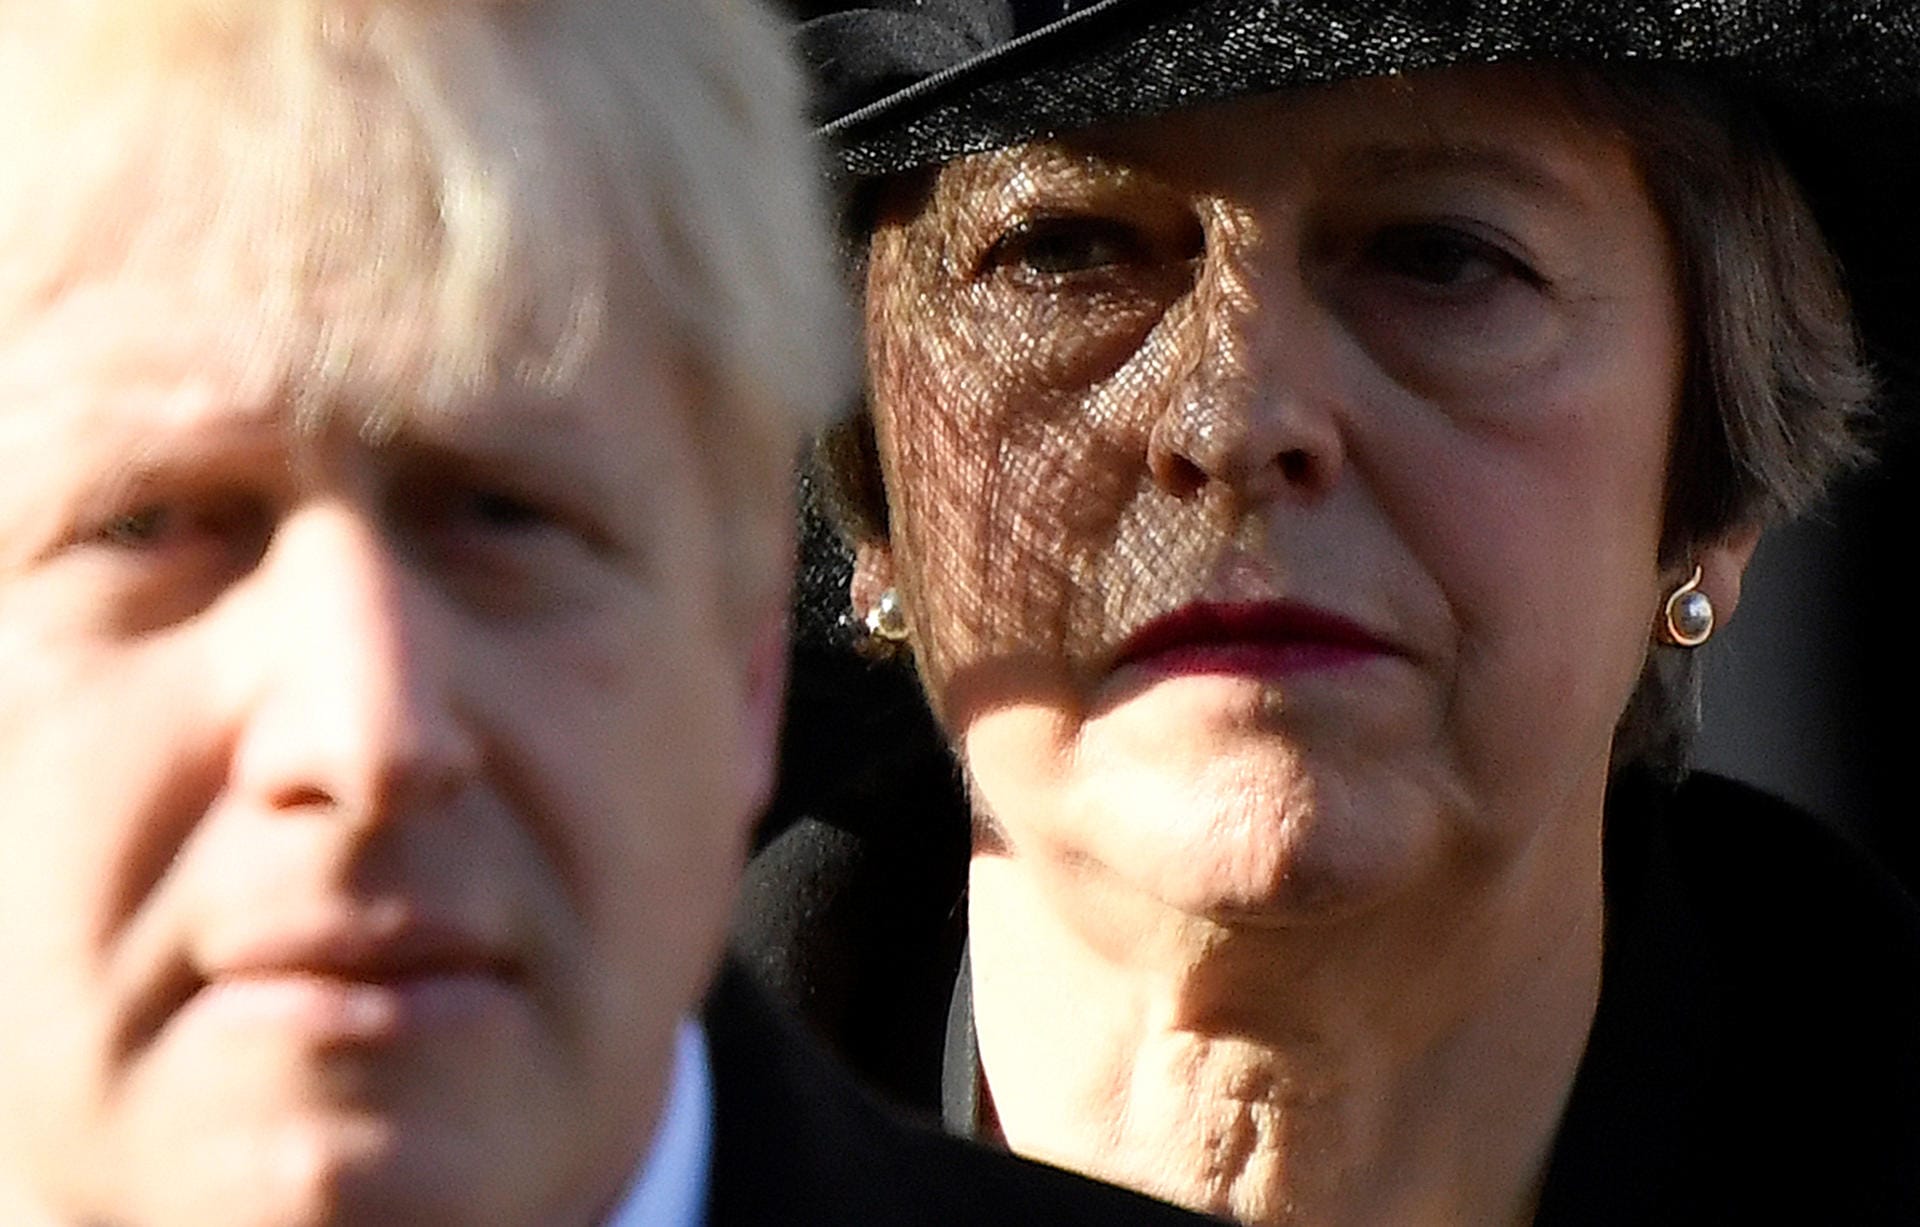 Die ehemalige Premierministerin Theresa May appellierte an die Bevölkerung, daheim zu bleiben. Jeder könne sich mit diesem "furchtbaren Virus" infizieren.